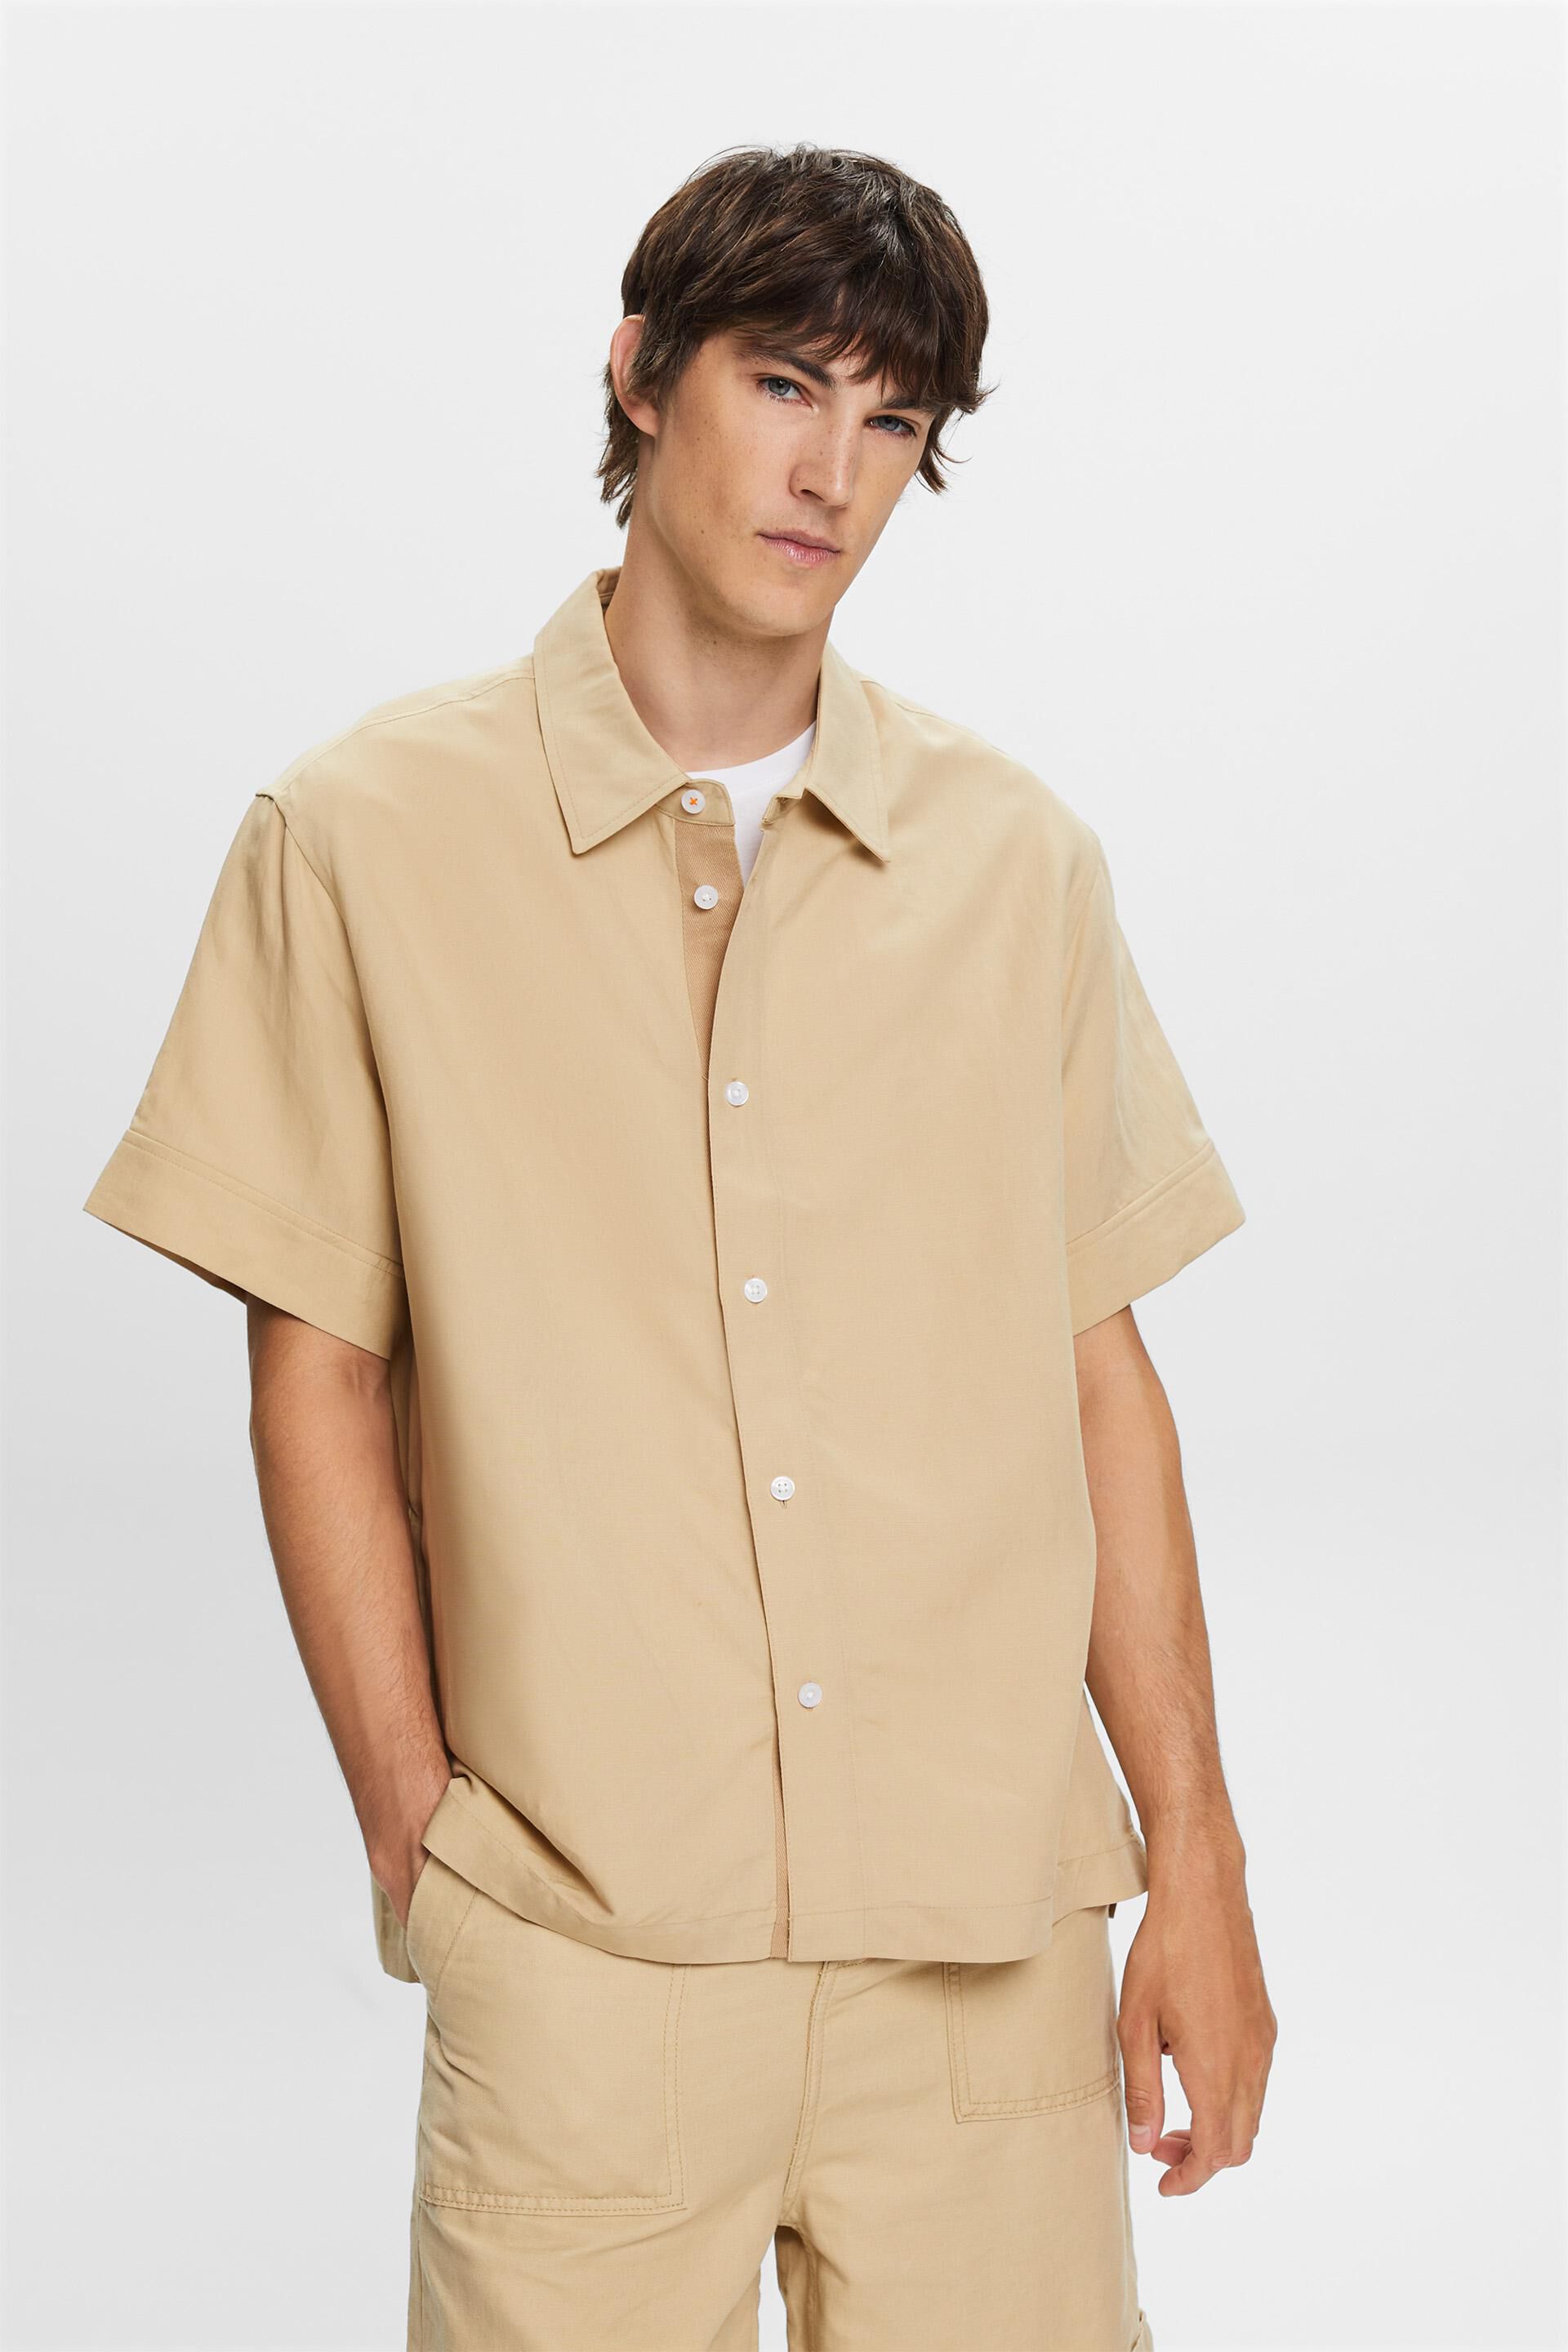 Esprit blend Short-sleeved shirt, linen